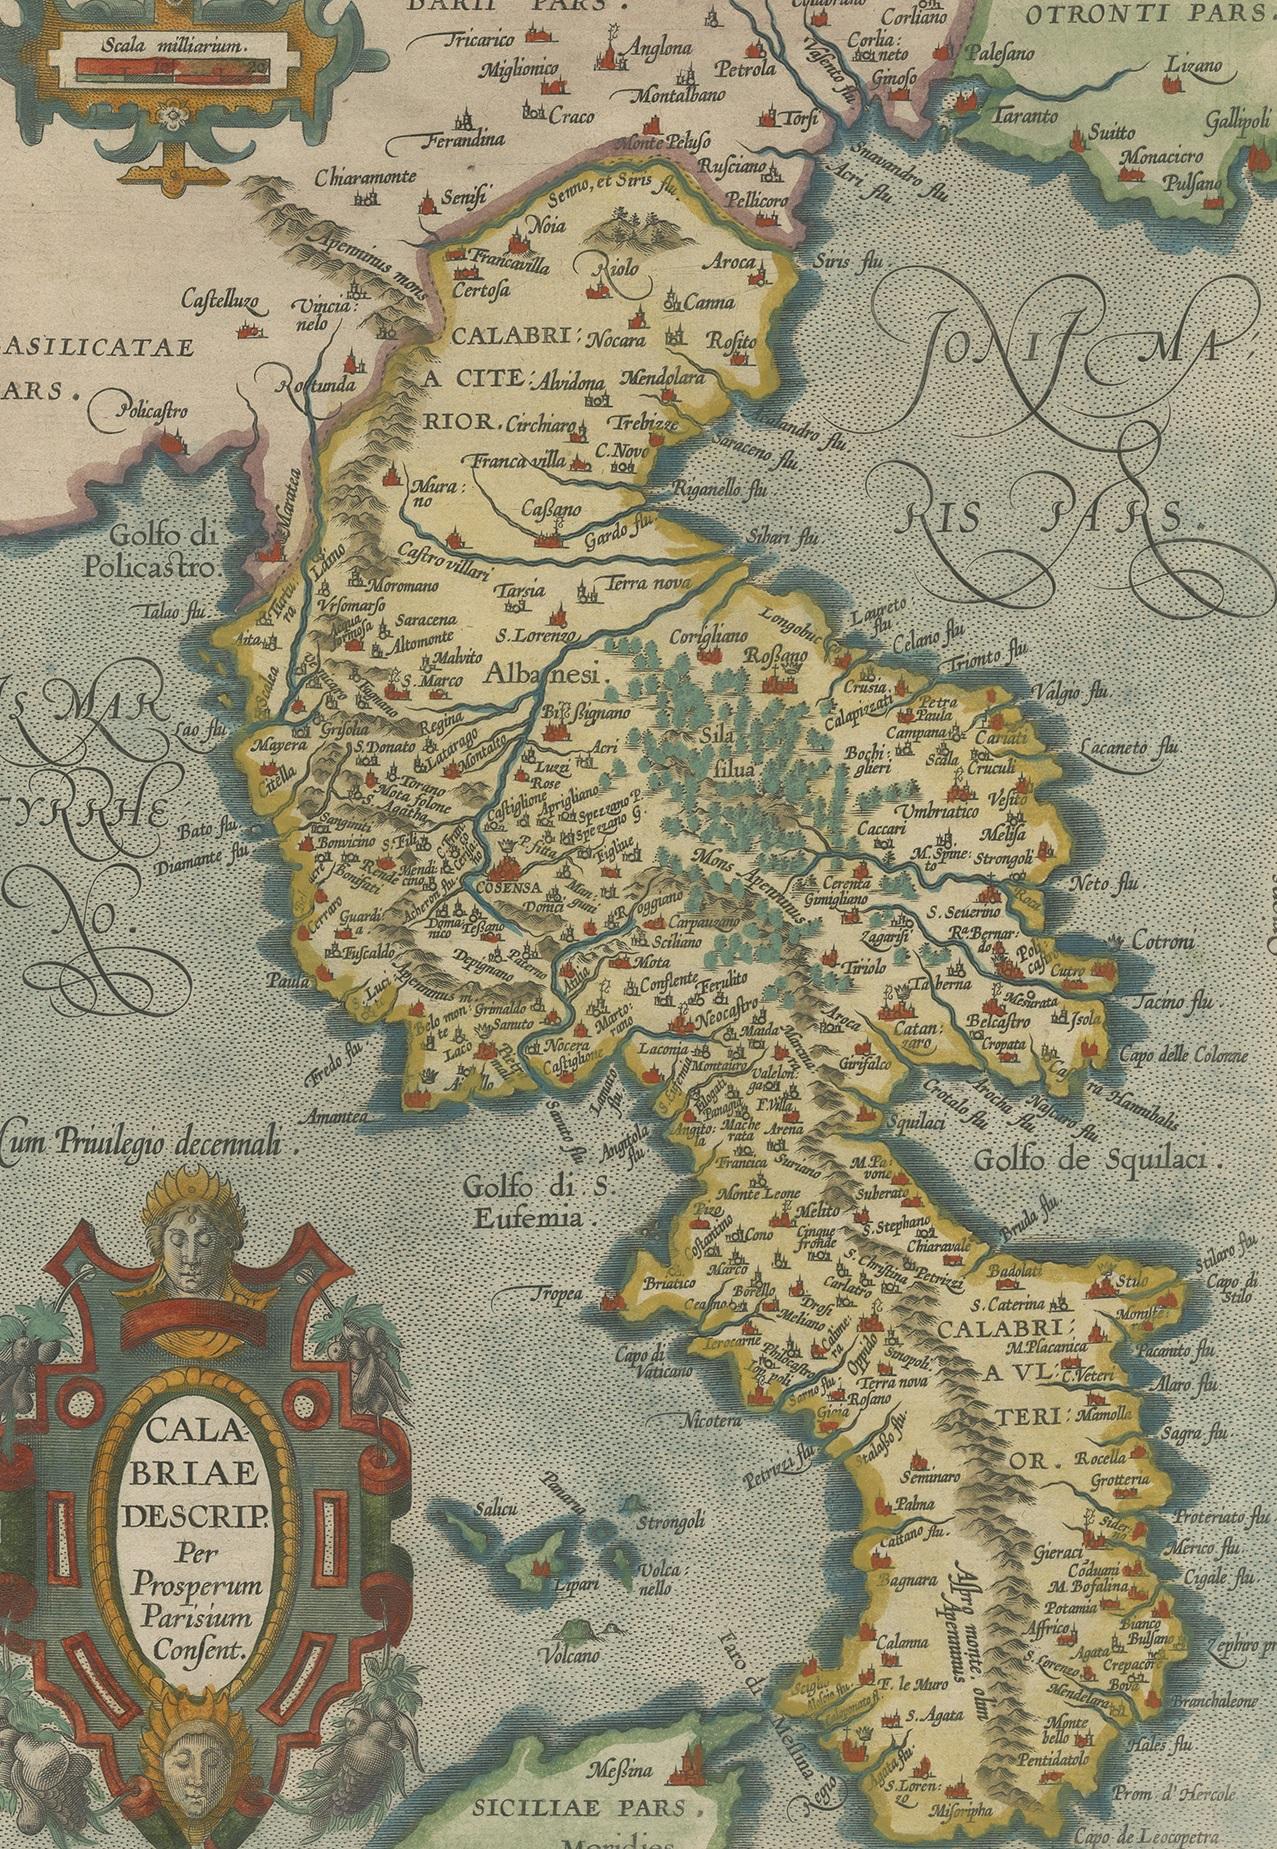 Antique map titled 'Calabriae Descrip. Per Prosperum Parisium Consent'. Beautiful map of the region of Calabria, Southern Italy. This map originates from 'Theatrum Orbis Terrarum' by A. Ortelius.